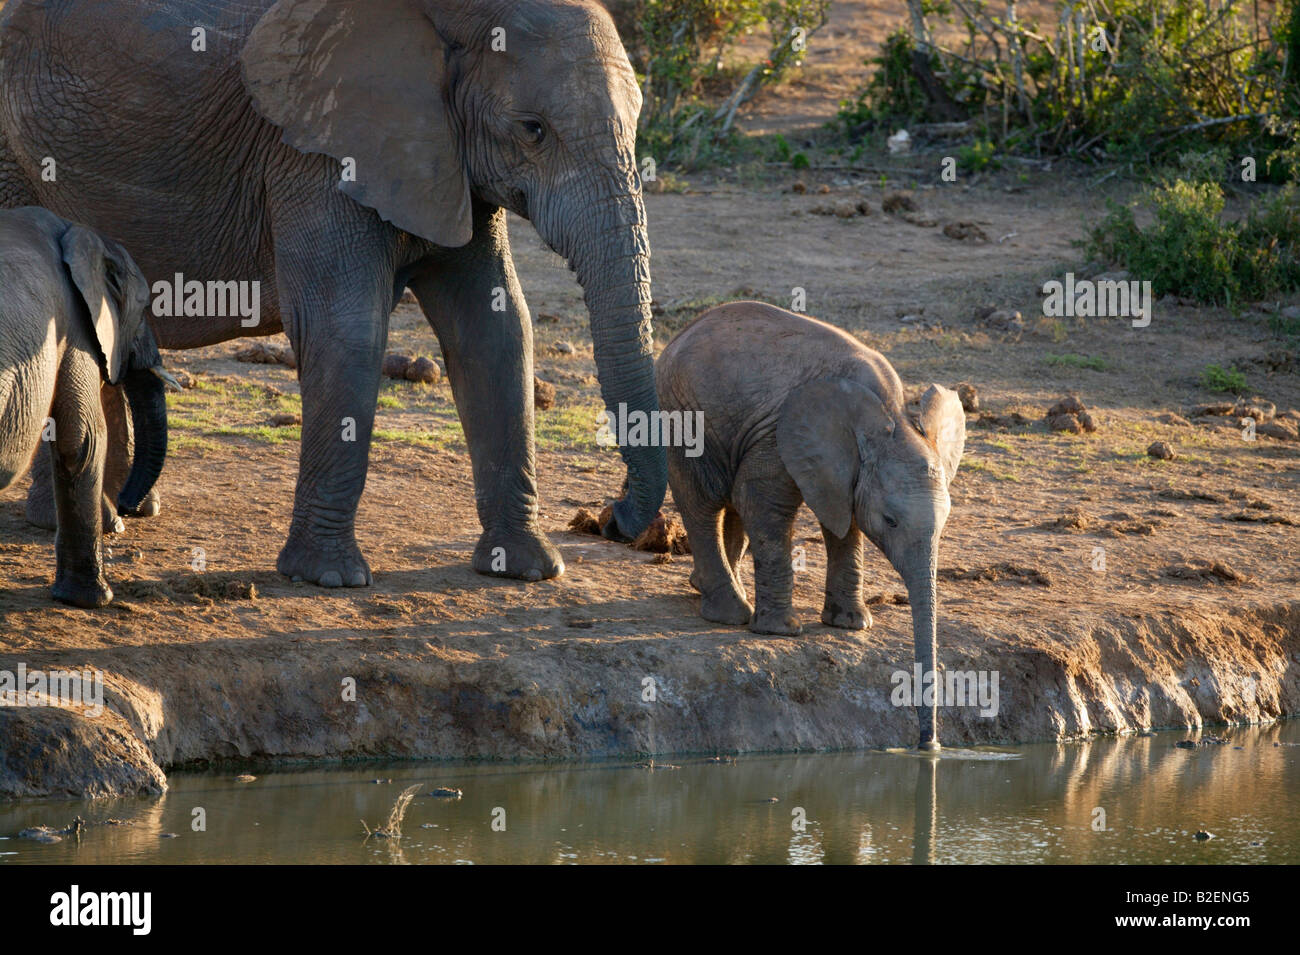 Elefant Kalb reichend mit seinem Stamm zu einem Wasserloch zu trinken mit seiner Mutter in Anwesenheit Stockfoto